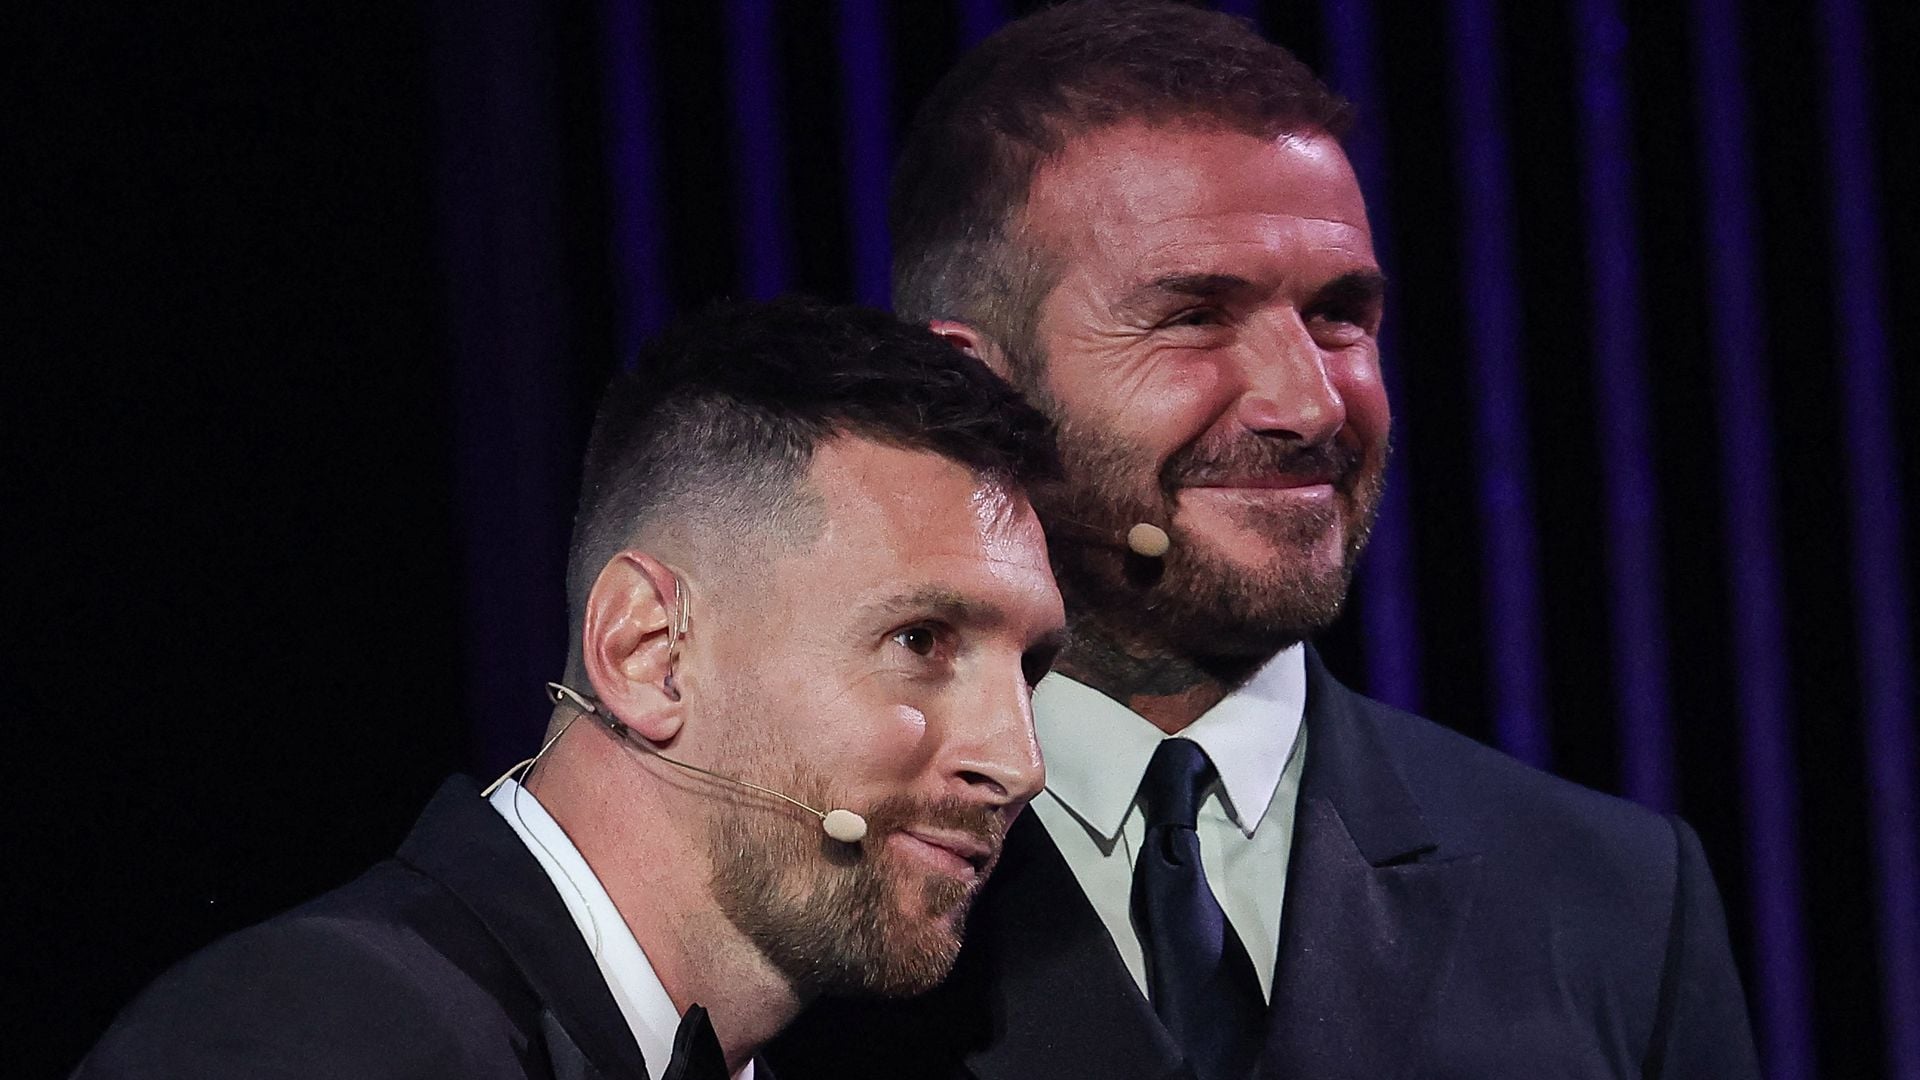 David Beckham shows his appreciation for Lionel Messi on his birthday: 'Mi amigo'